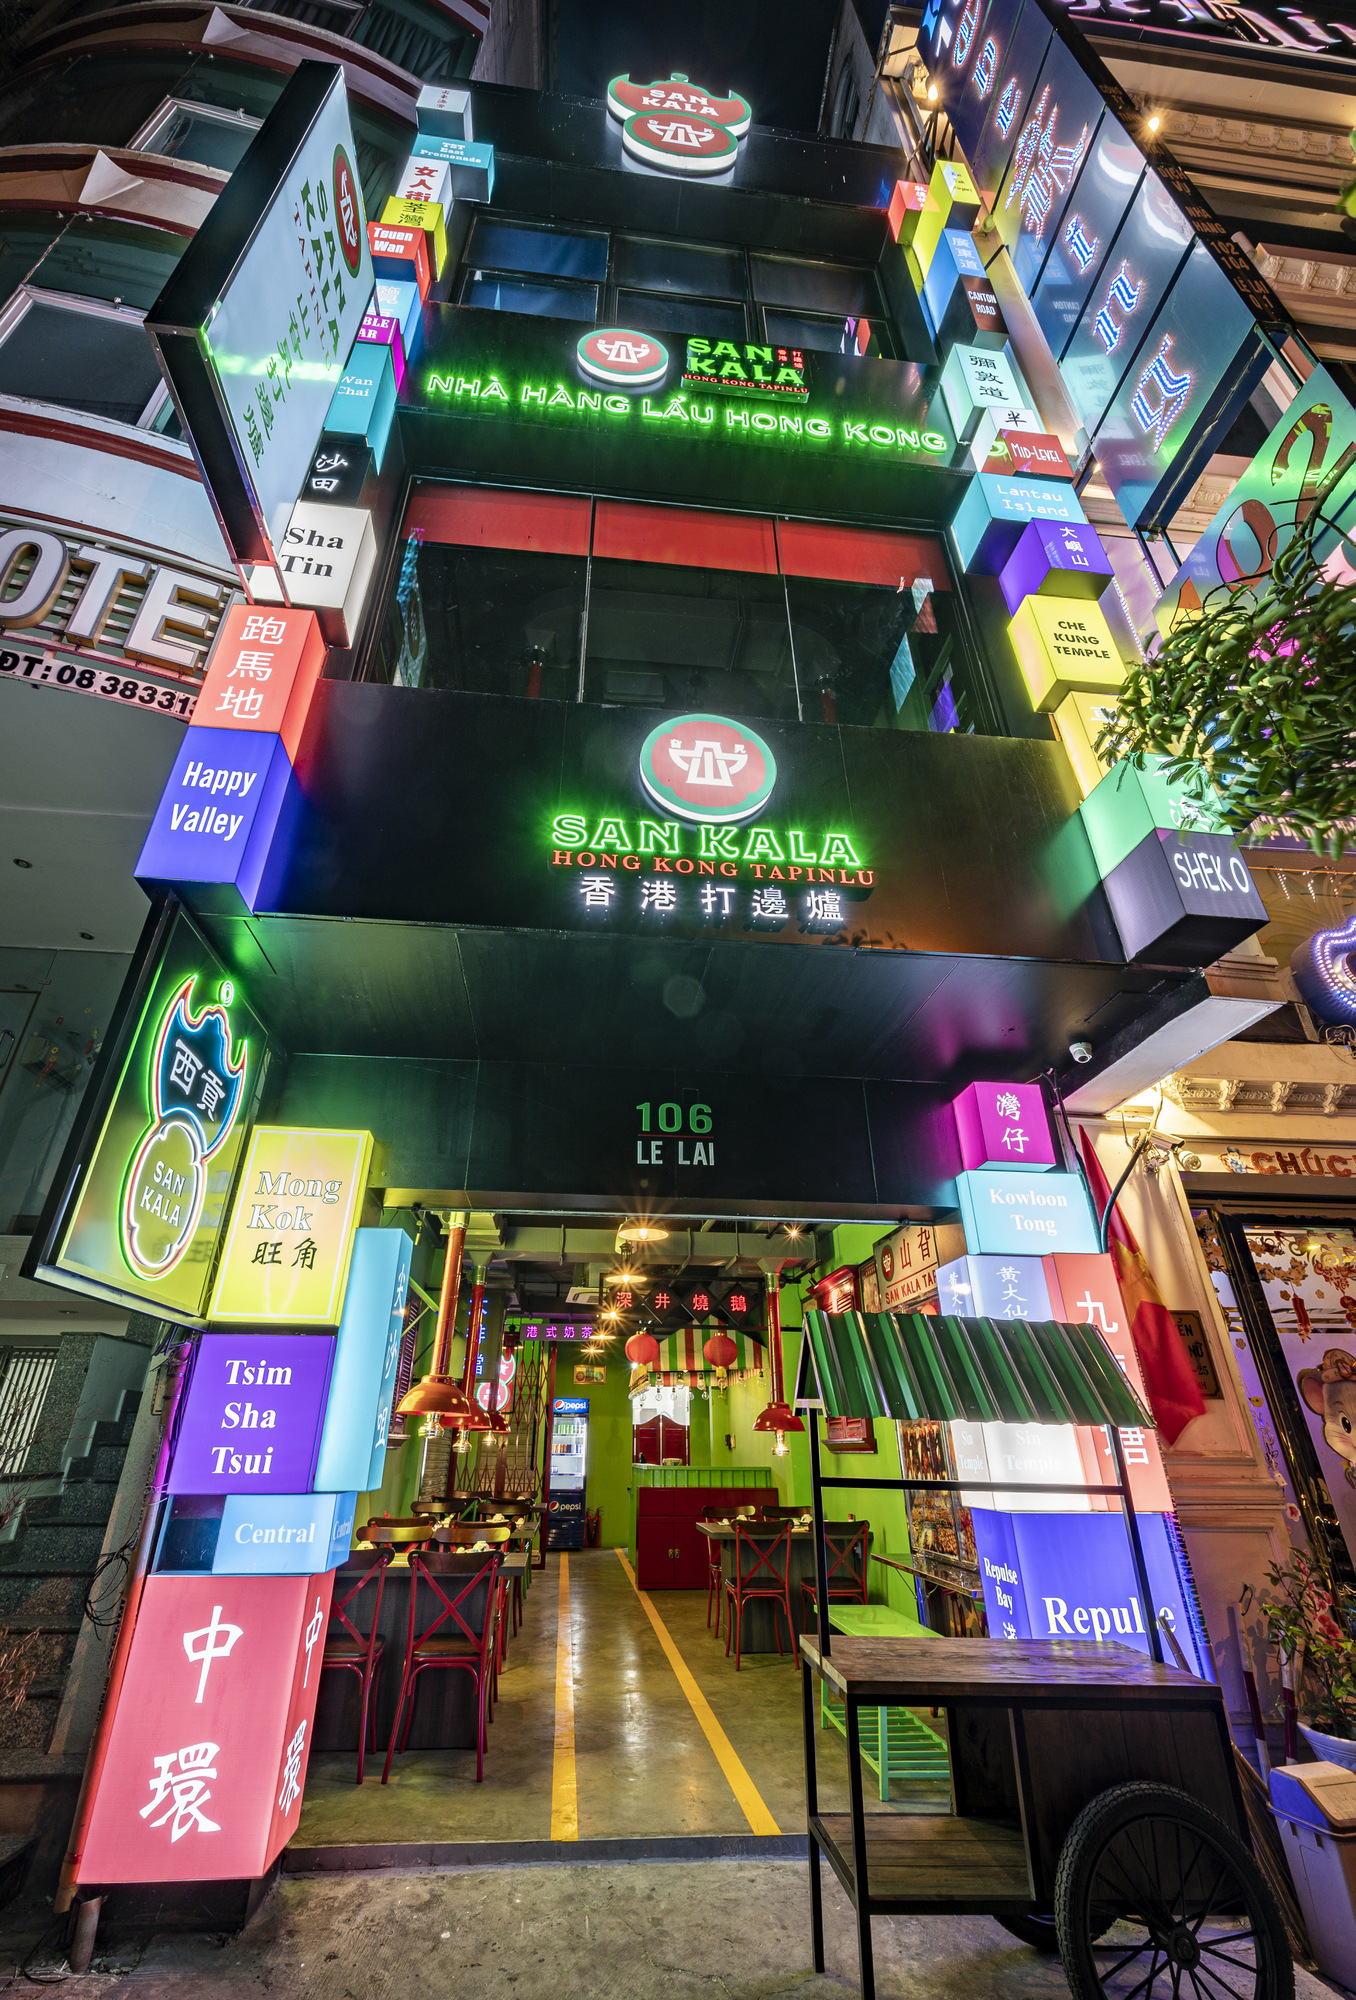 三卡拉香港塔品露餐厅|ART-Arrakis | 建筑室内设计的创新与灵感